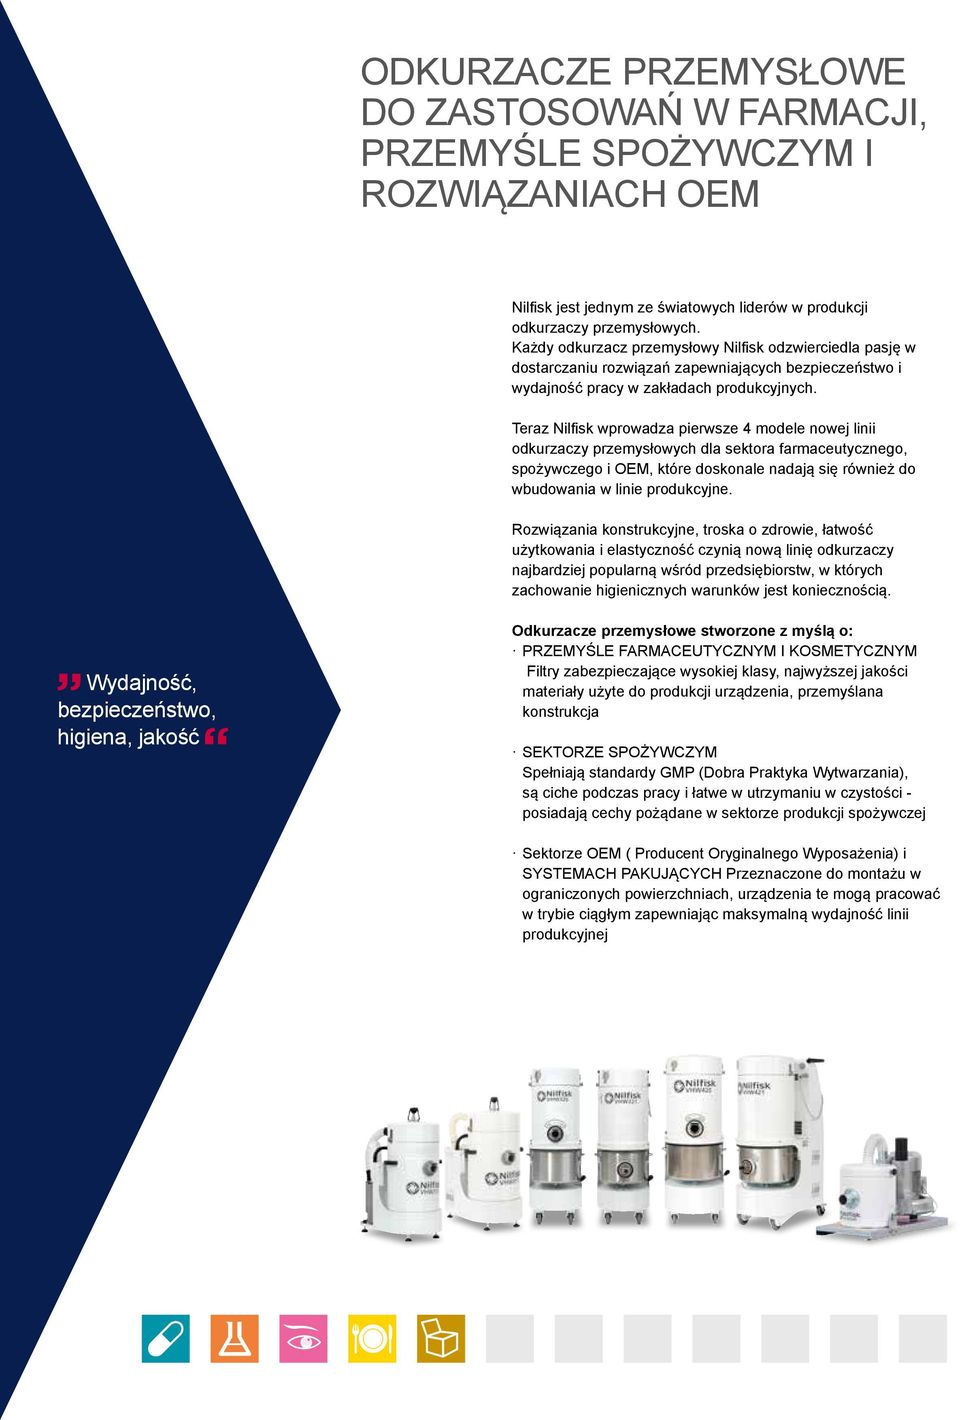 Teraz Nilfisk wprowadza pierwsze 4 modele nowej linii odkurzaczy przemysłowych dla sektora farmaceutycznego, spożywczego i OEM, które doskonale nadają się również do wbudowania w linie produkcyjne.